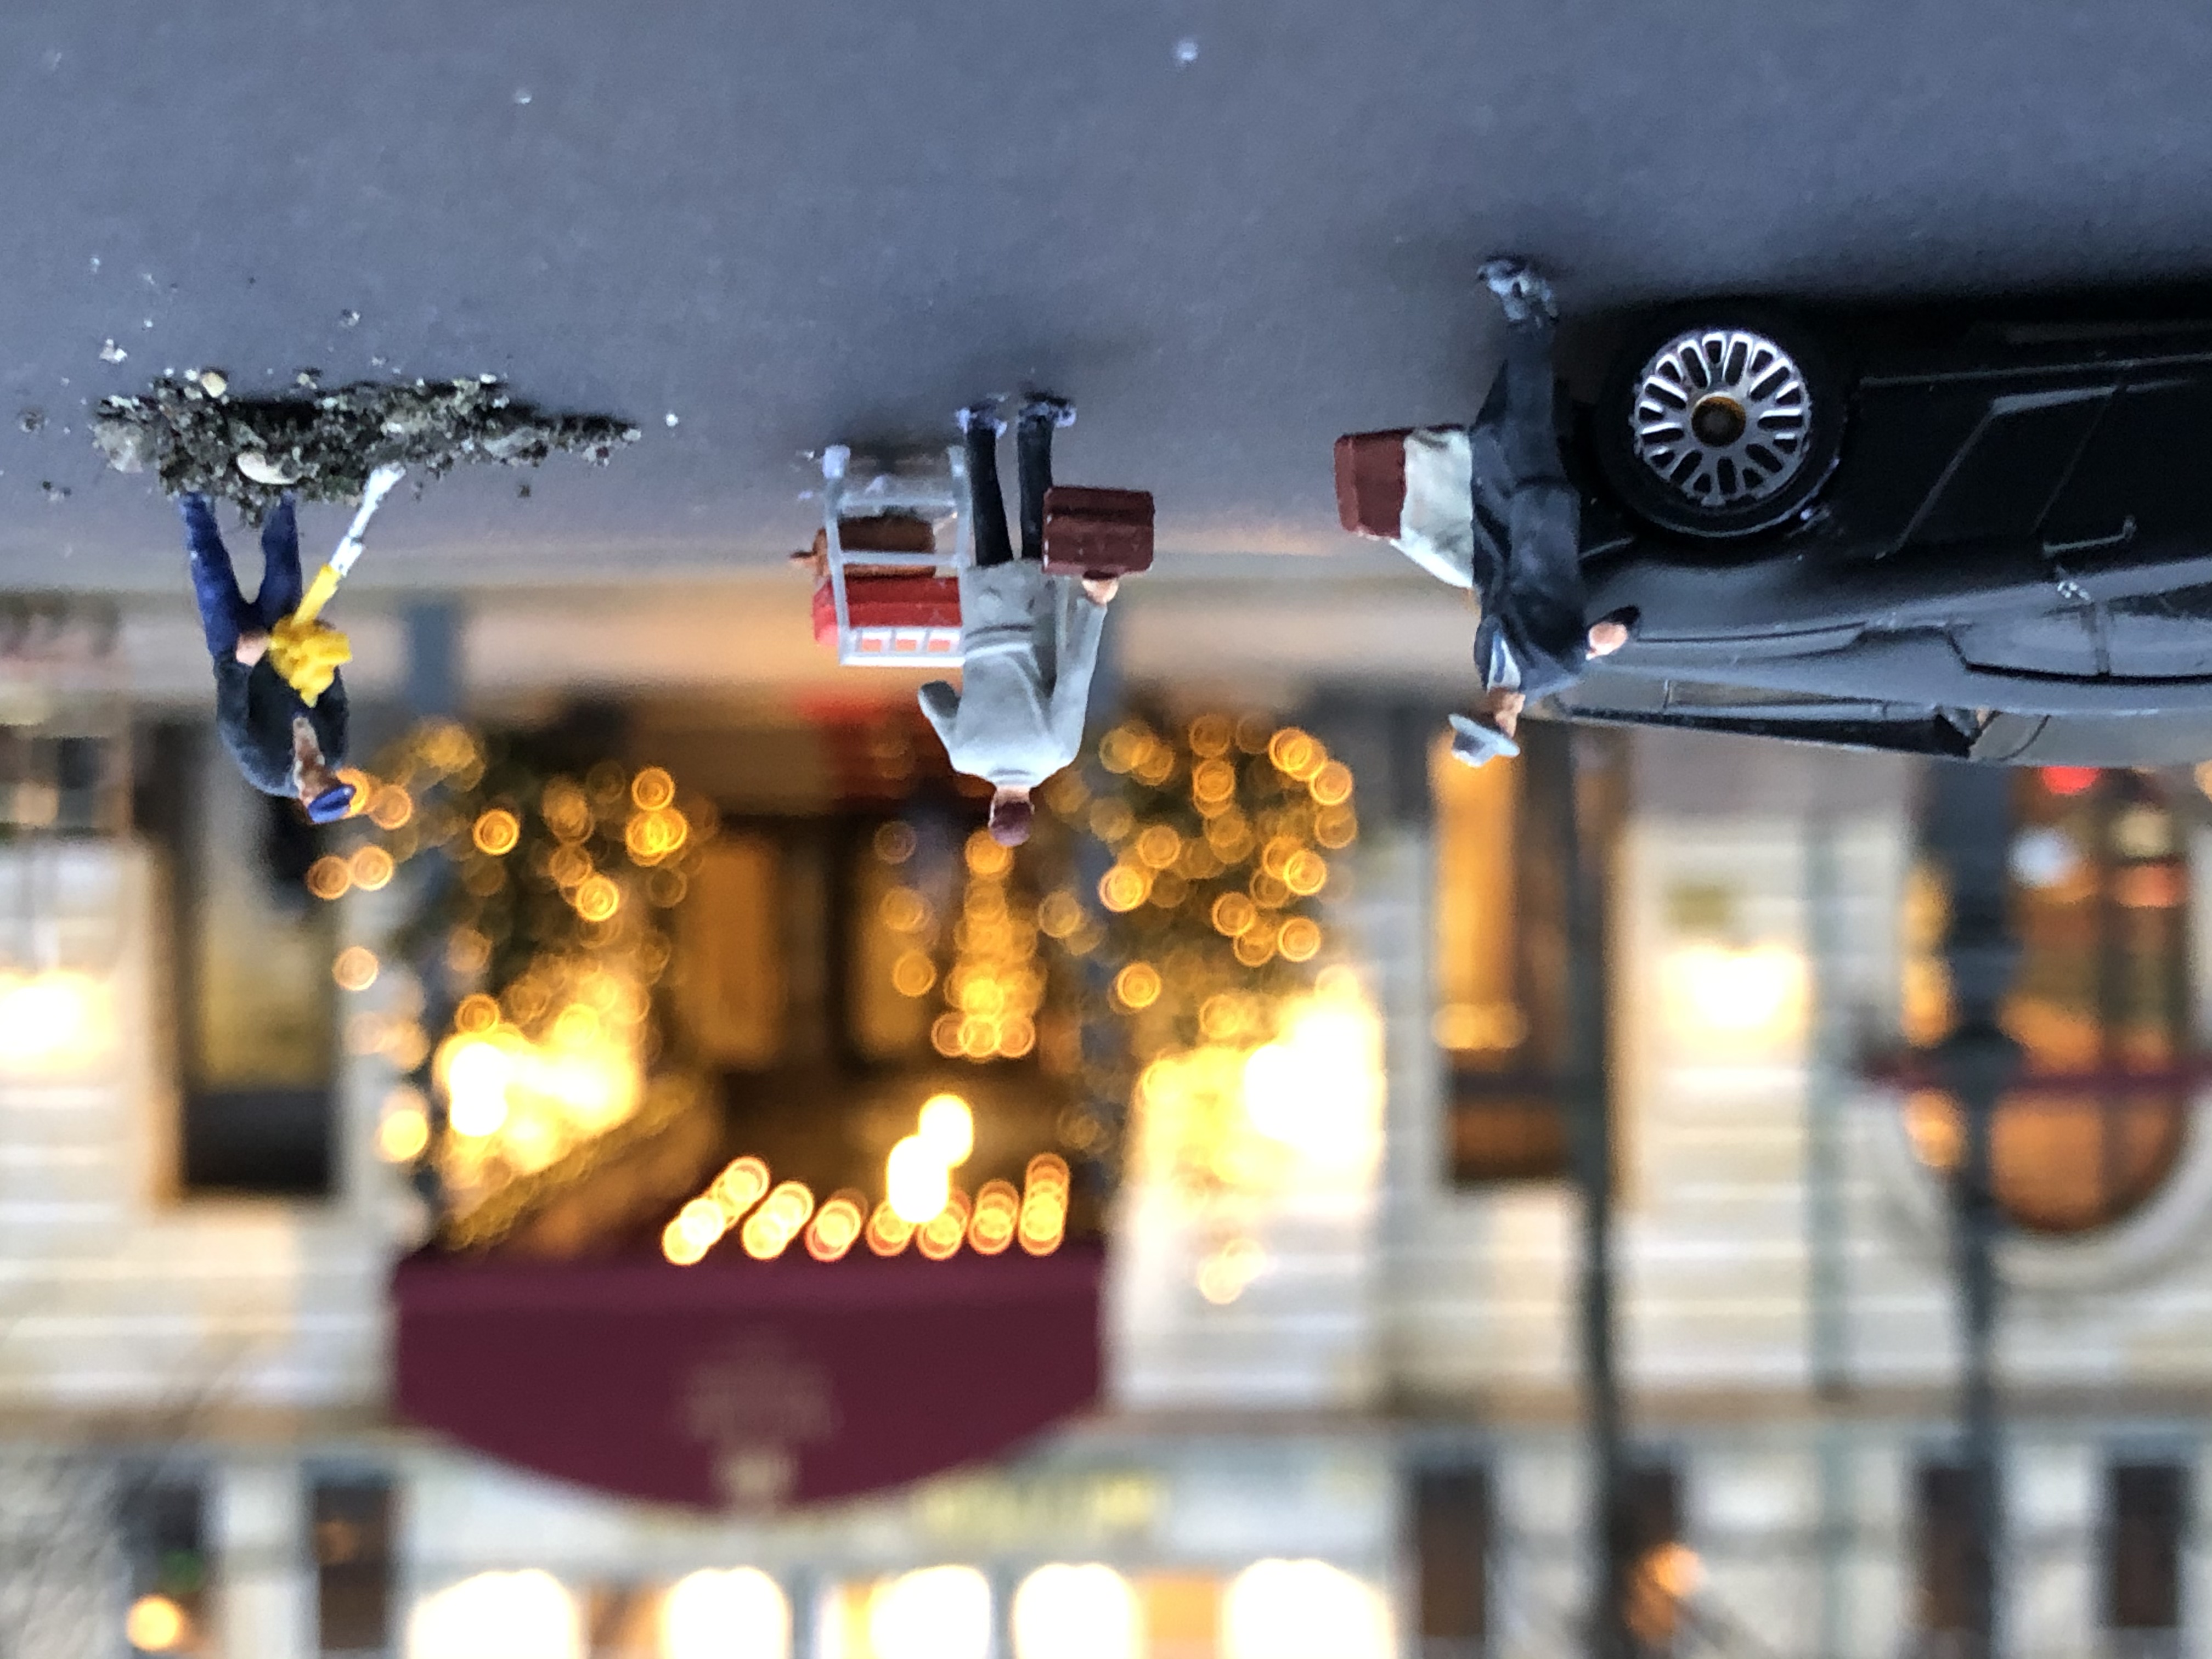 Verblüffende Perspektive: im Hintergrund das echte Hotel Adlon – davor Miniaturfiguren in Szene gesetzt (Foto: Noah Grewing, Lessing-Gymnasium)